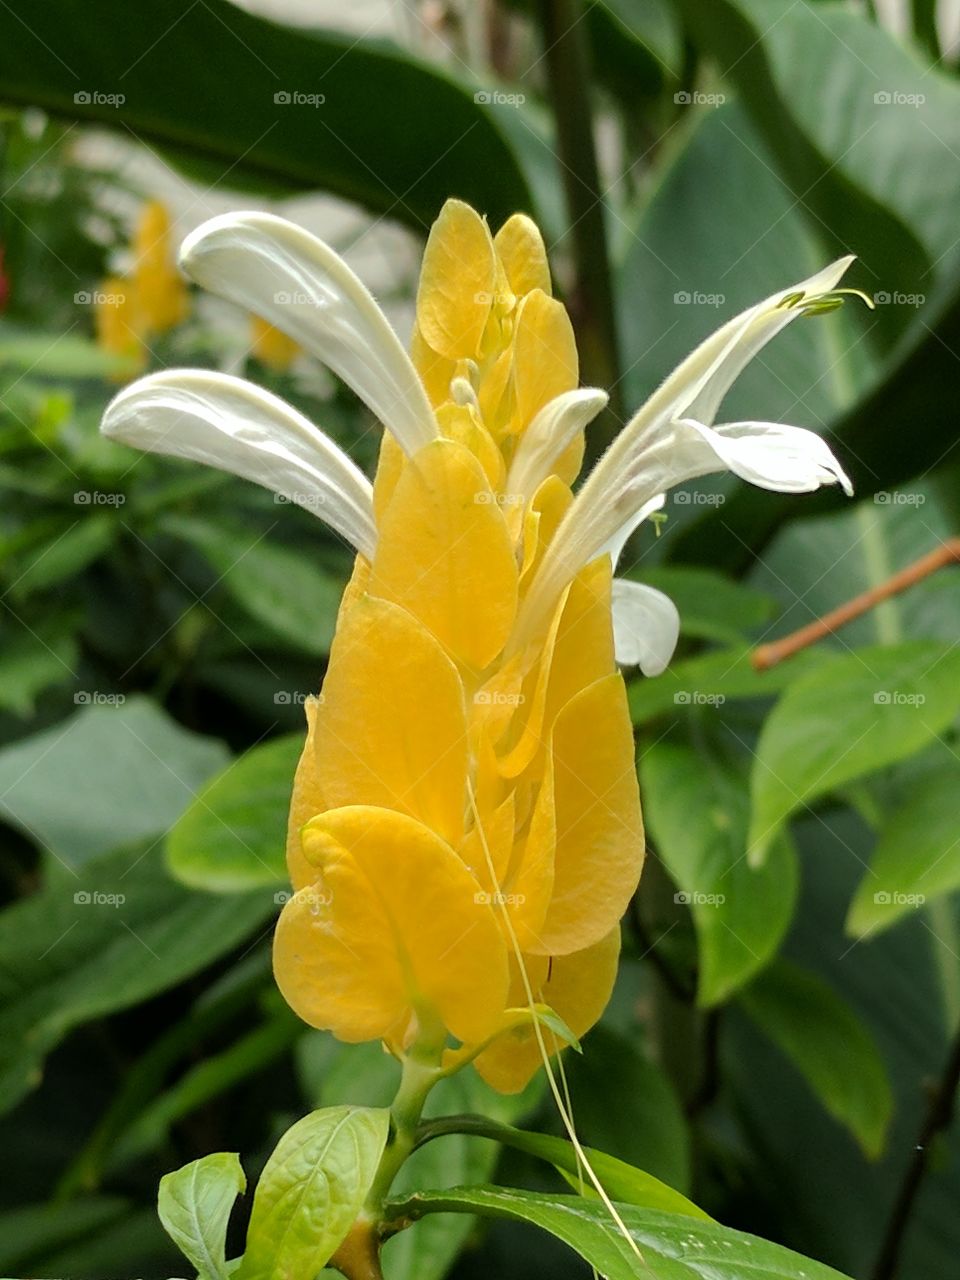 lovely golden shrimp yellow flower